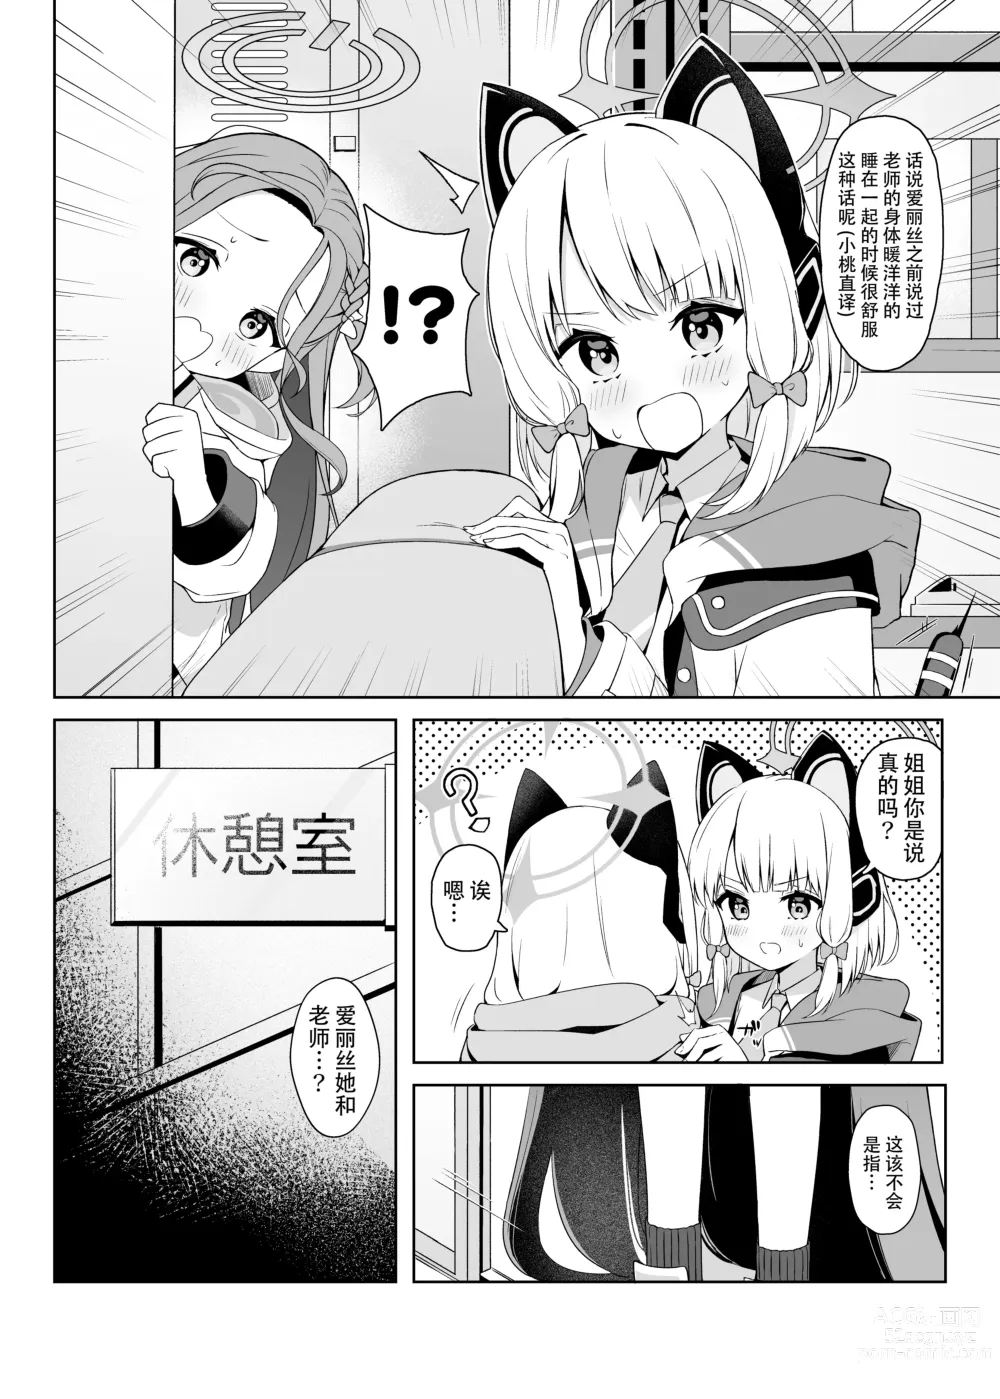 Page 4 of doujinshi 要和爱丽丝一起做场幸福的梦吗?